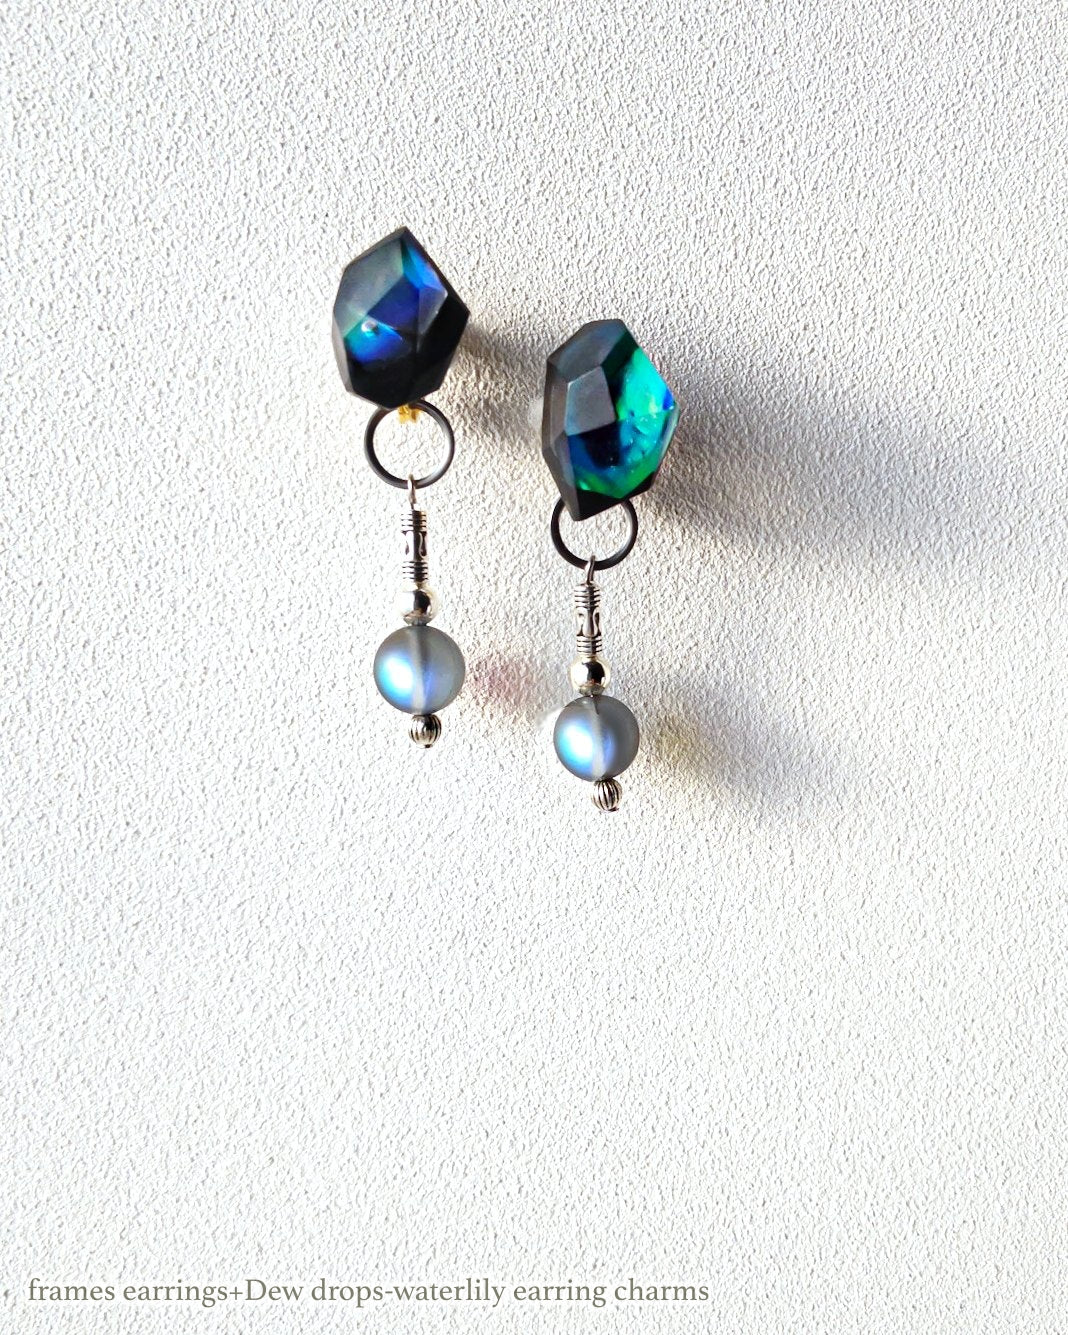 Dew drops-waterlily 2way earrings/ Interchangeable_clear gray